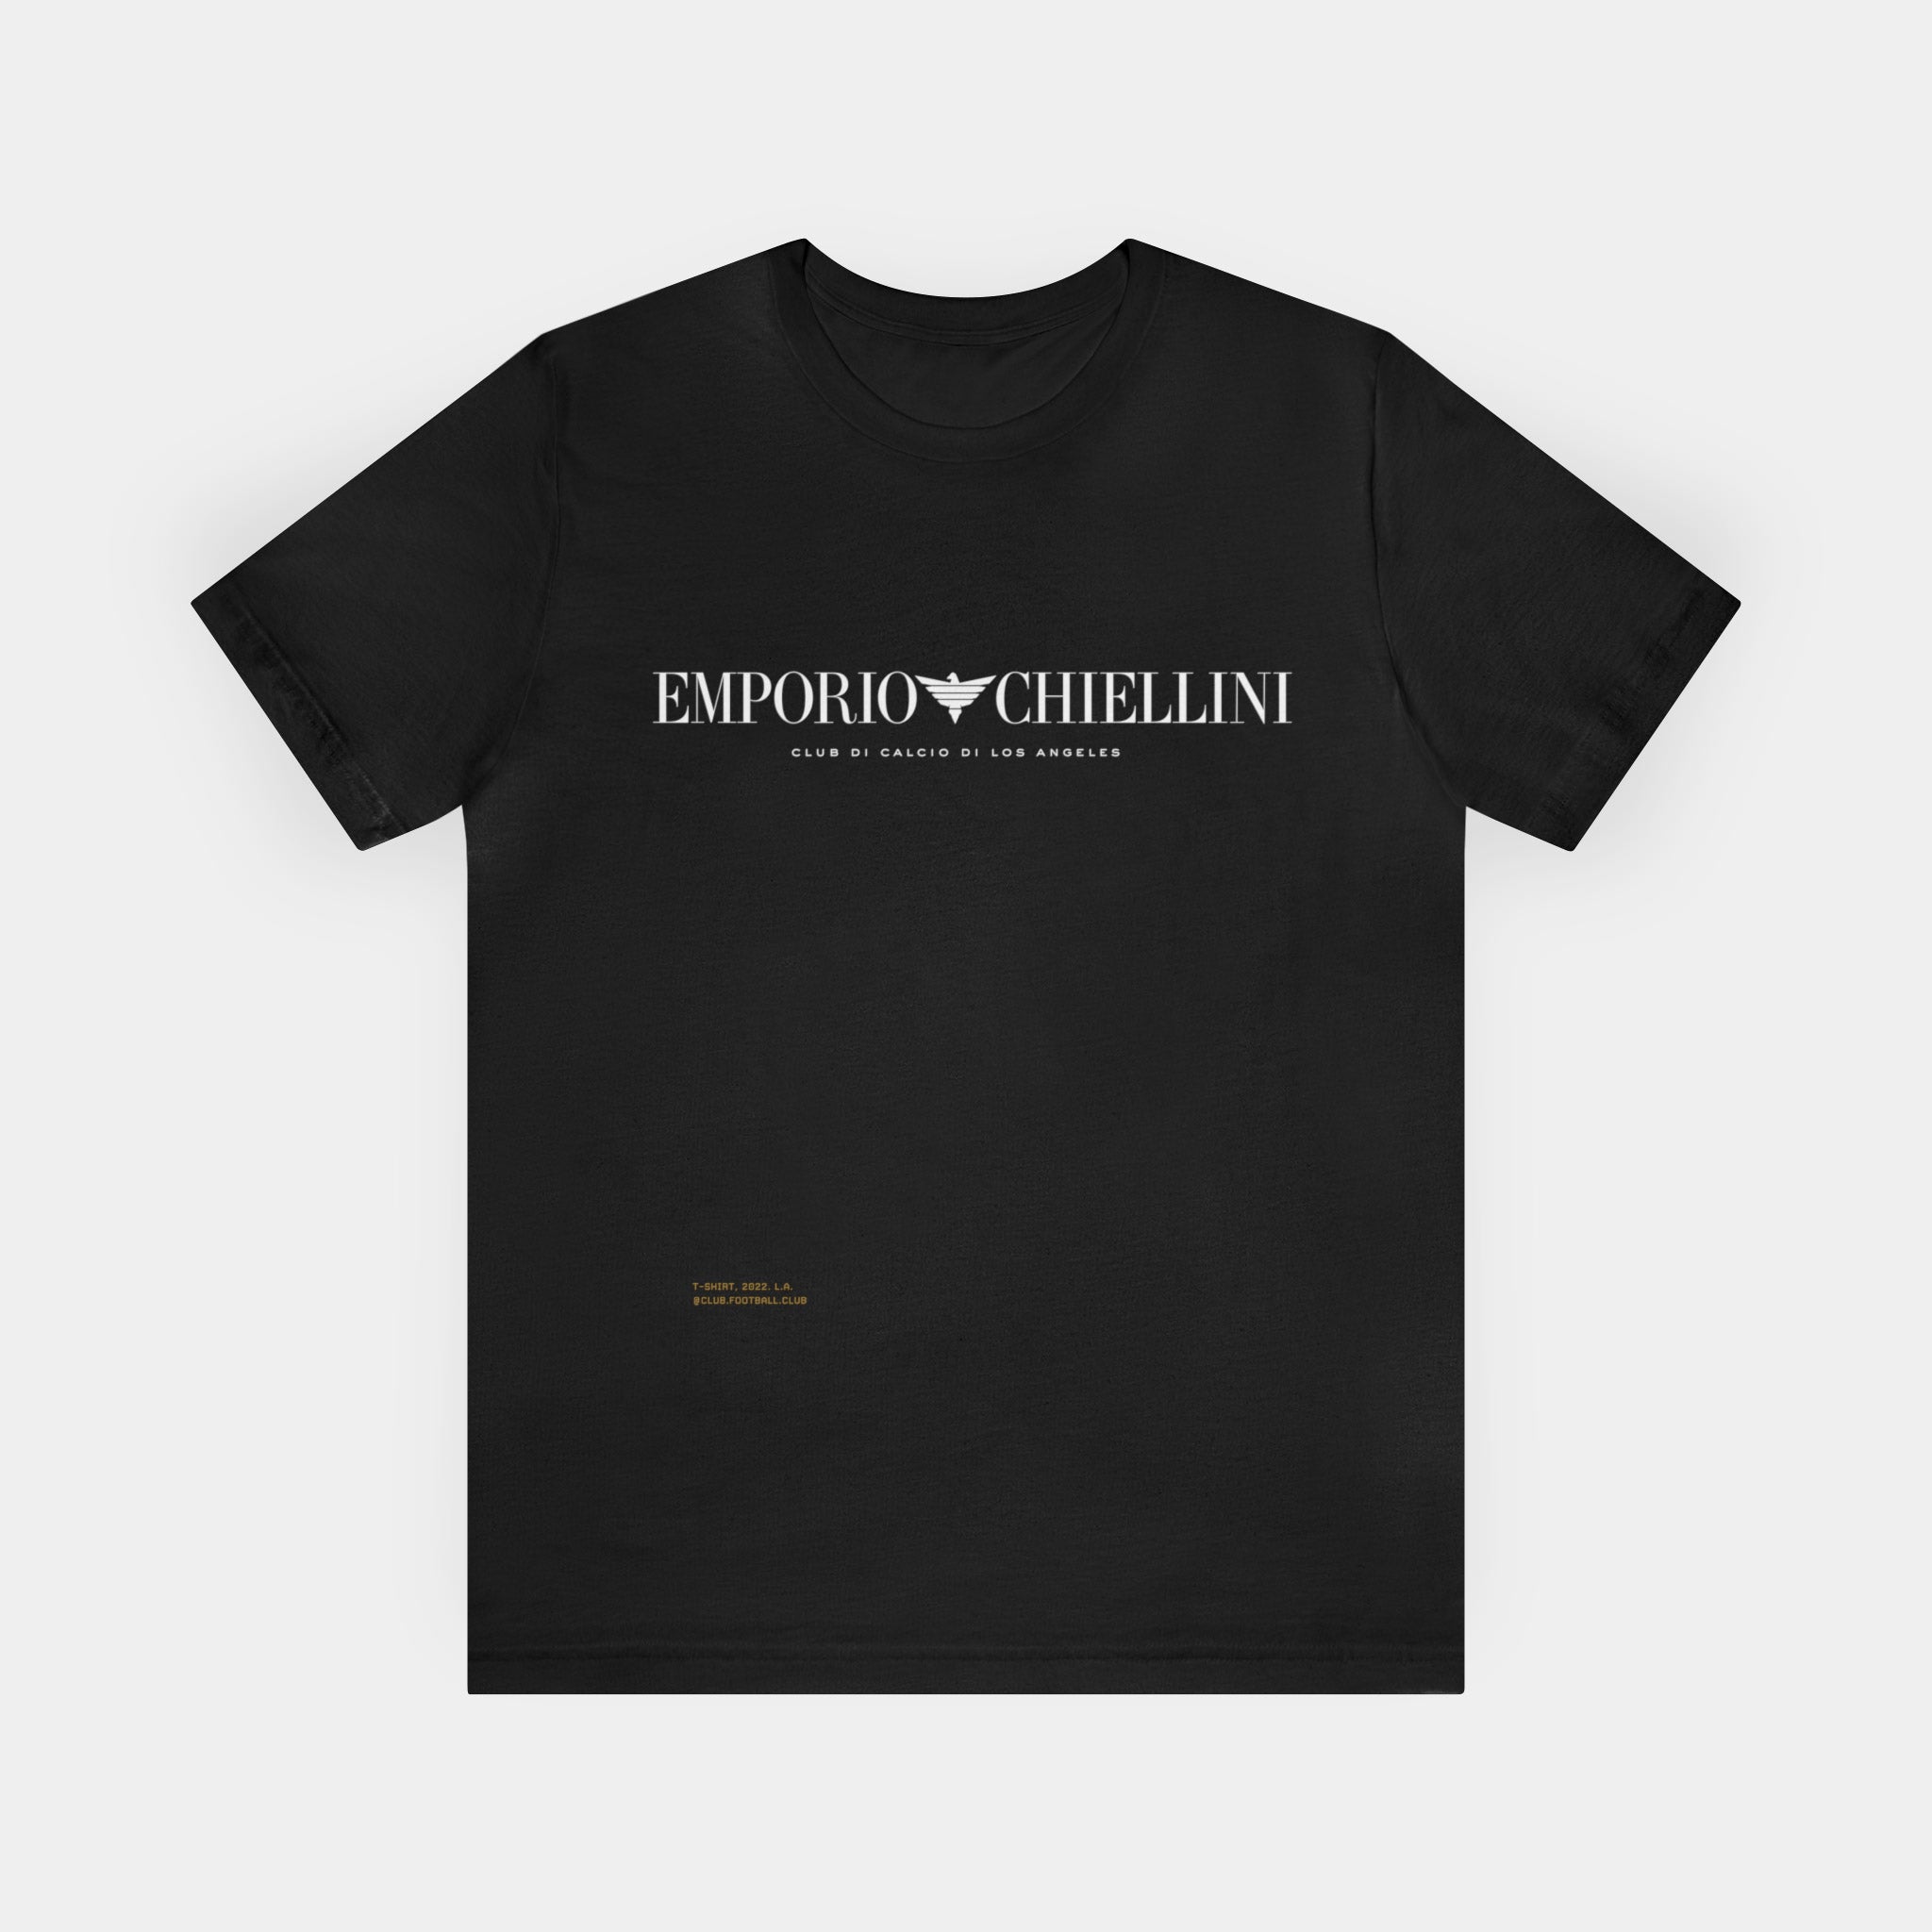 Emporio Chiellini (LAFC) T-shirt